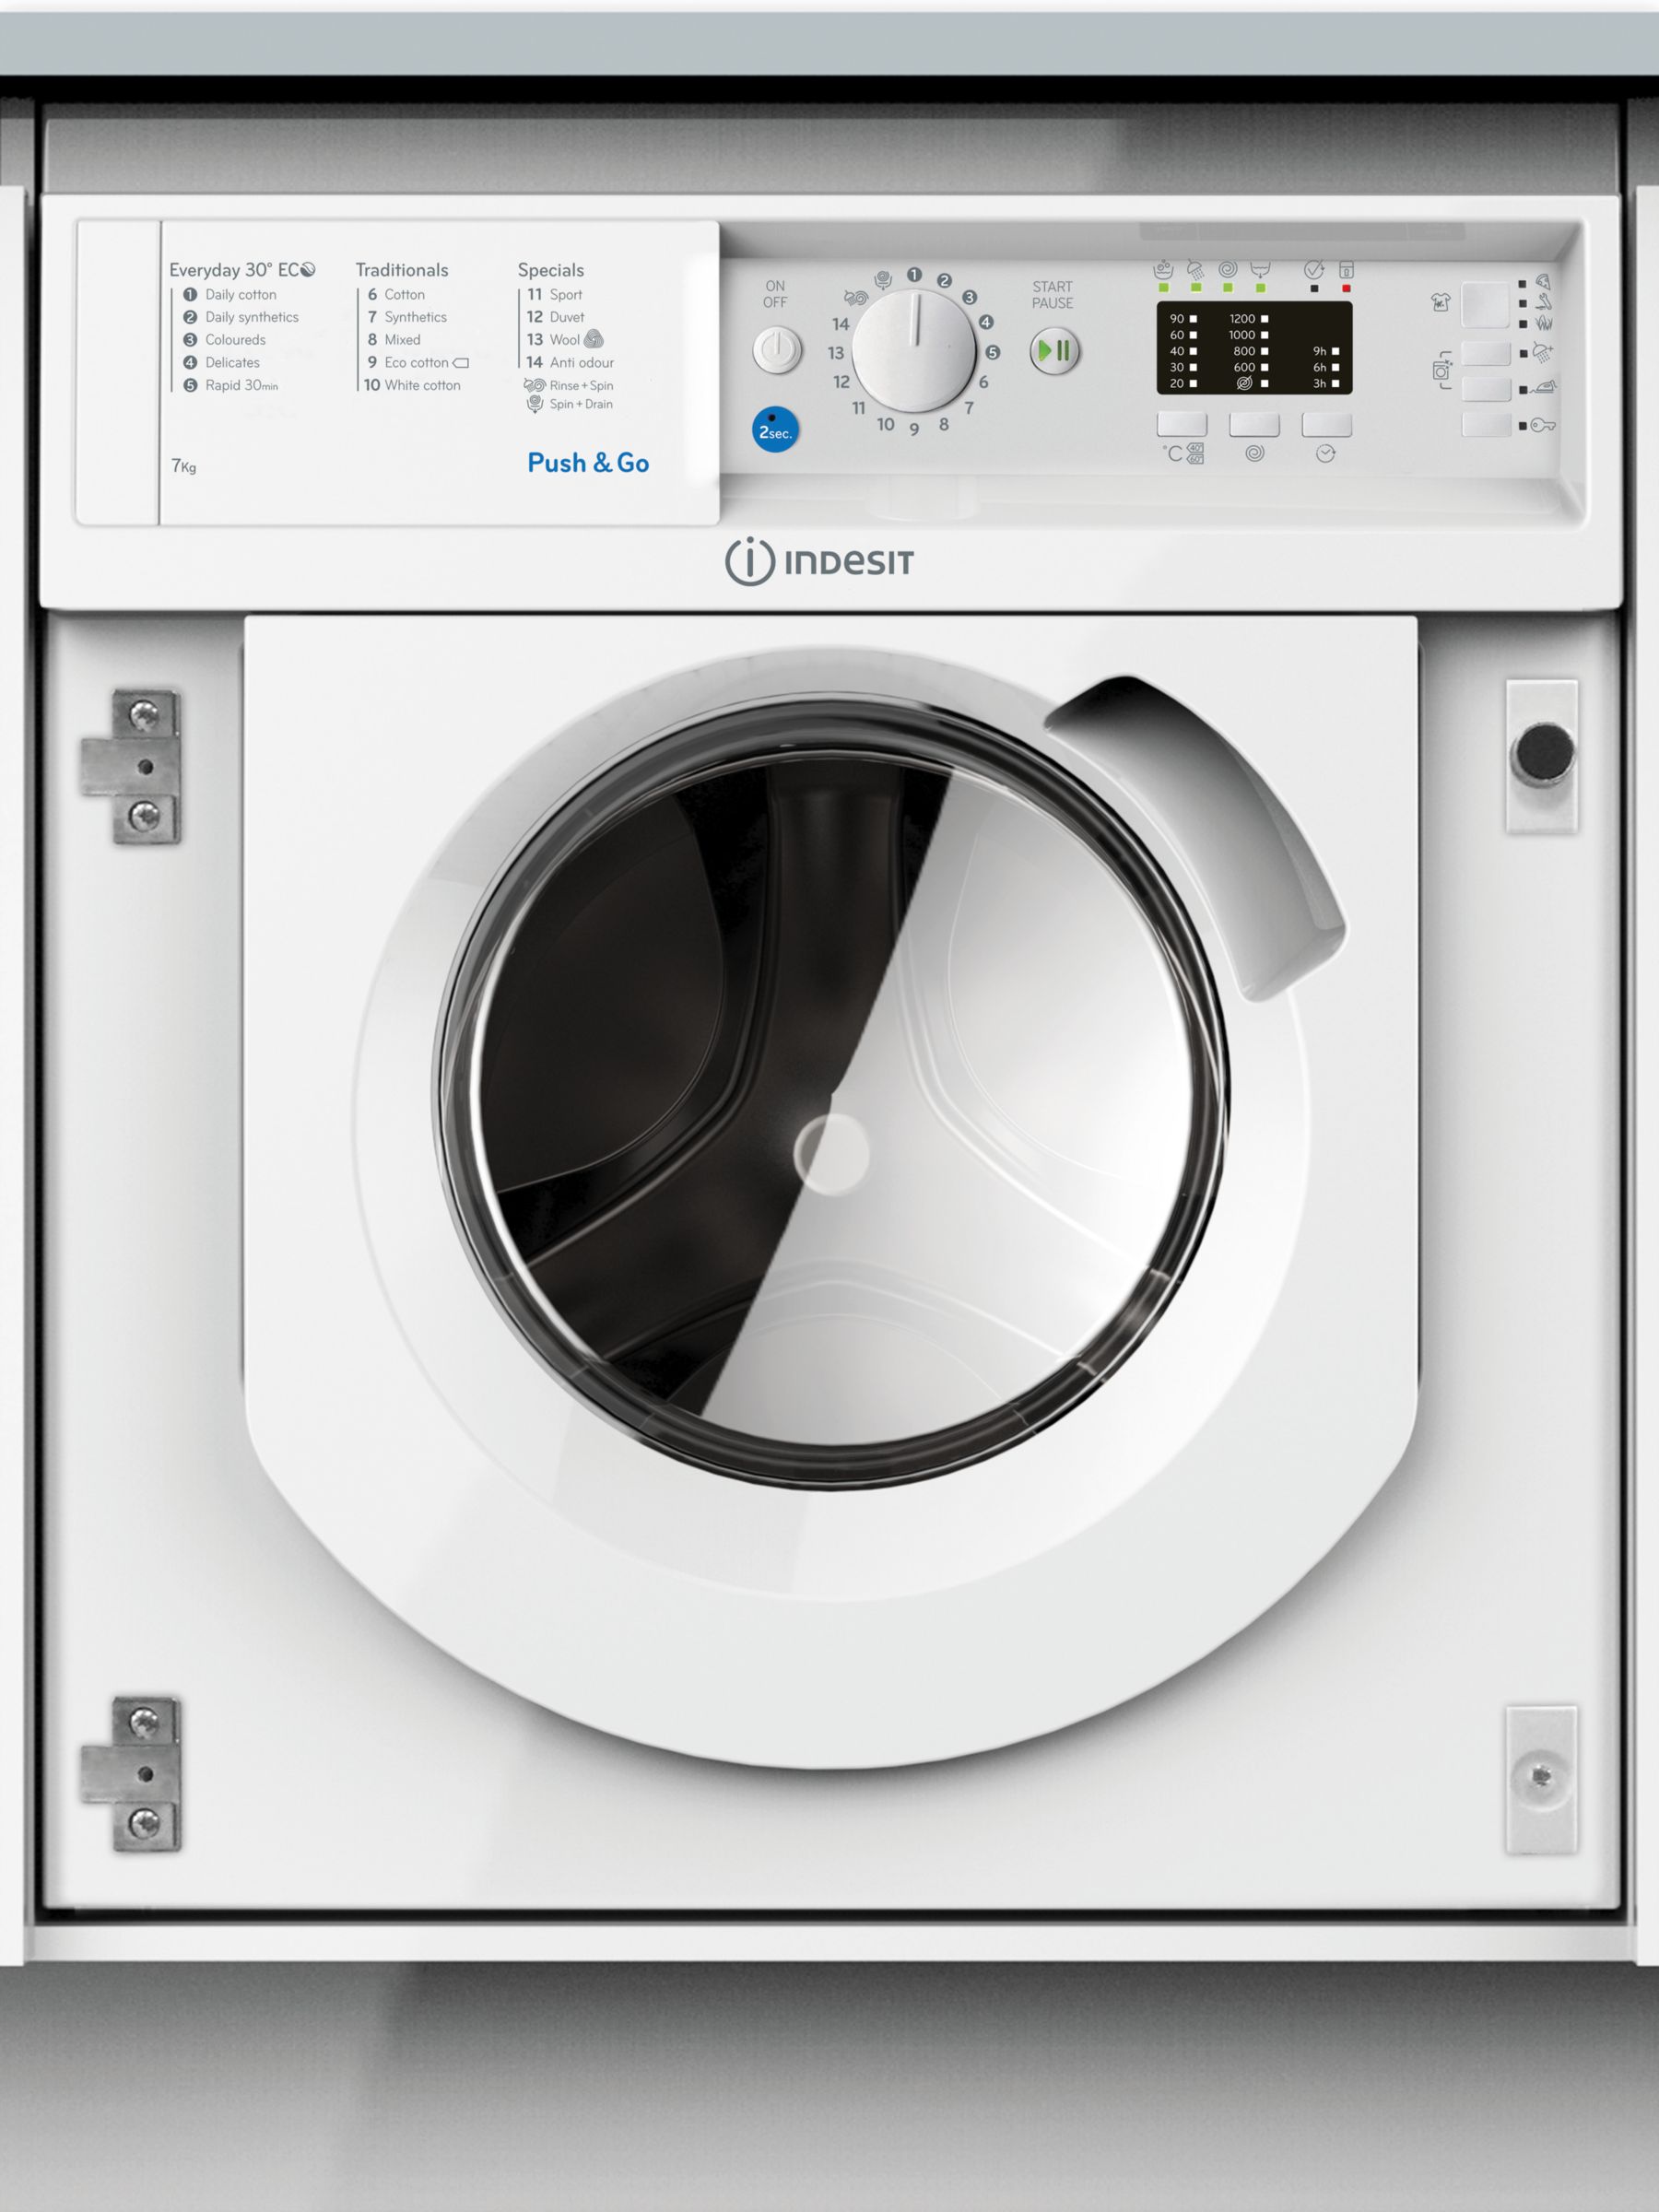 Indesit BIWMIL71252UK Built-In Slim Depth Washing Machine, 7kg Load, A++ Energy Rating, White